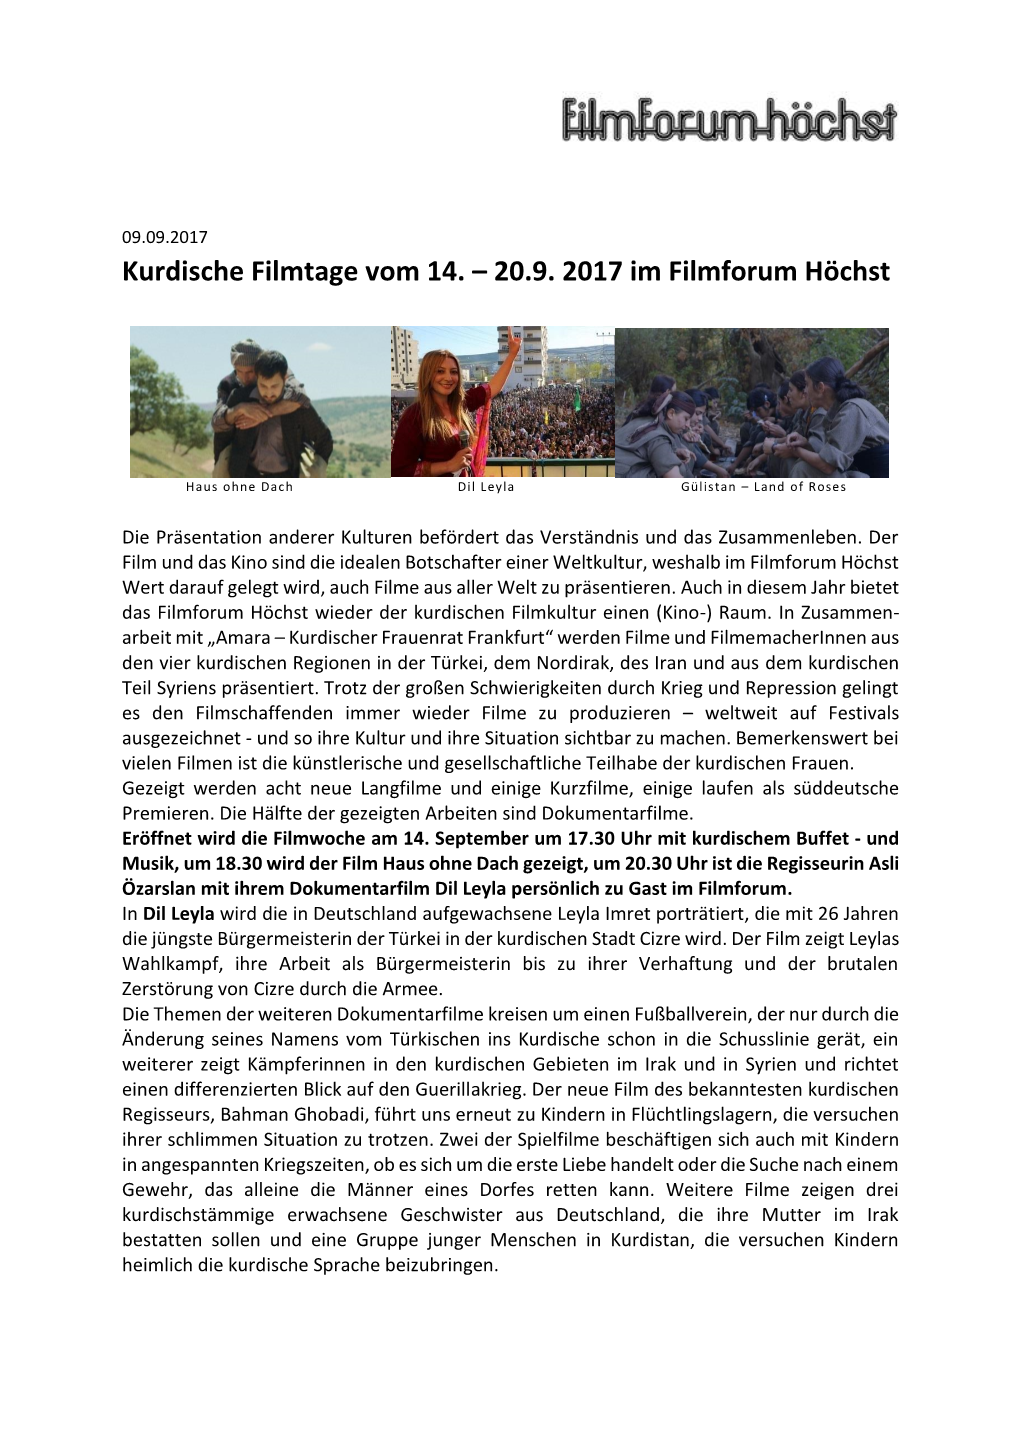 Kurdische Filmtage Vom 14. – 20.9. 2017 Im Filmforum Höchst